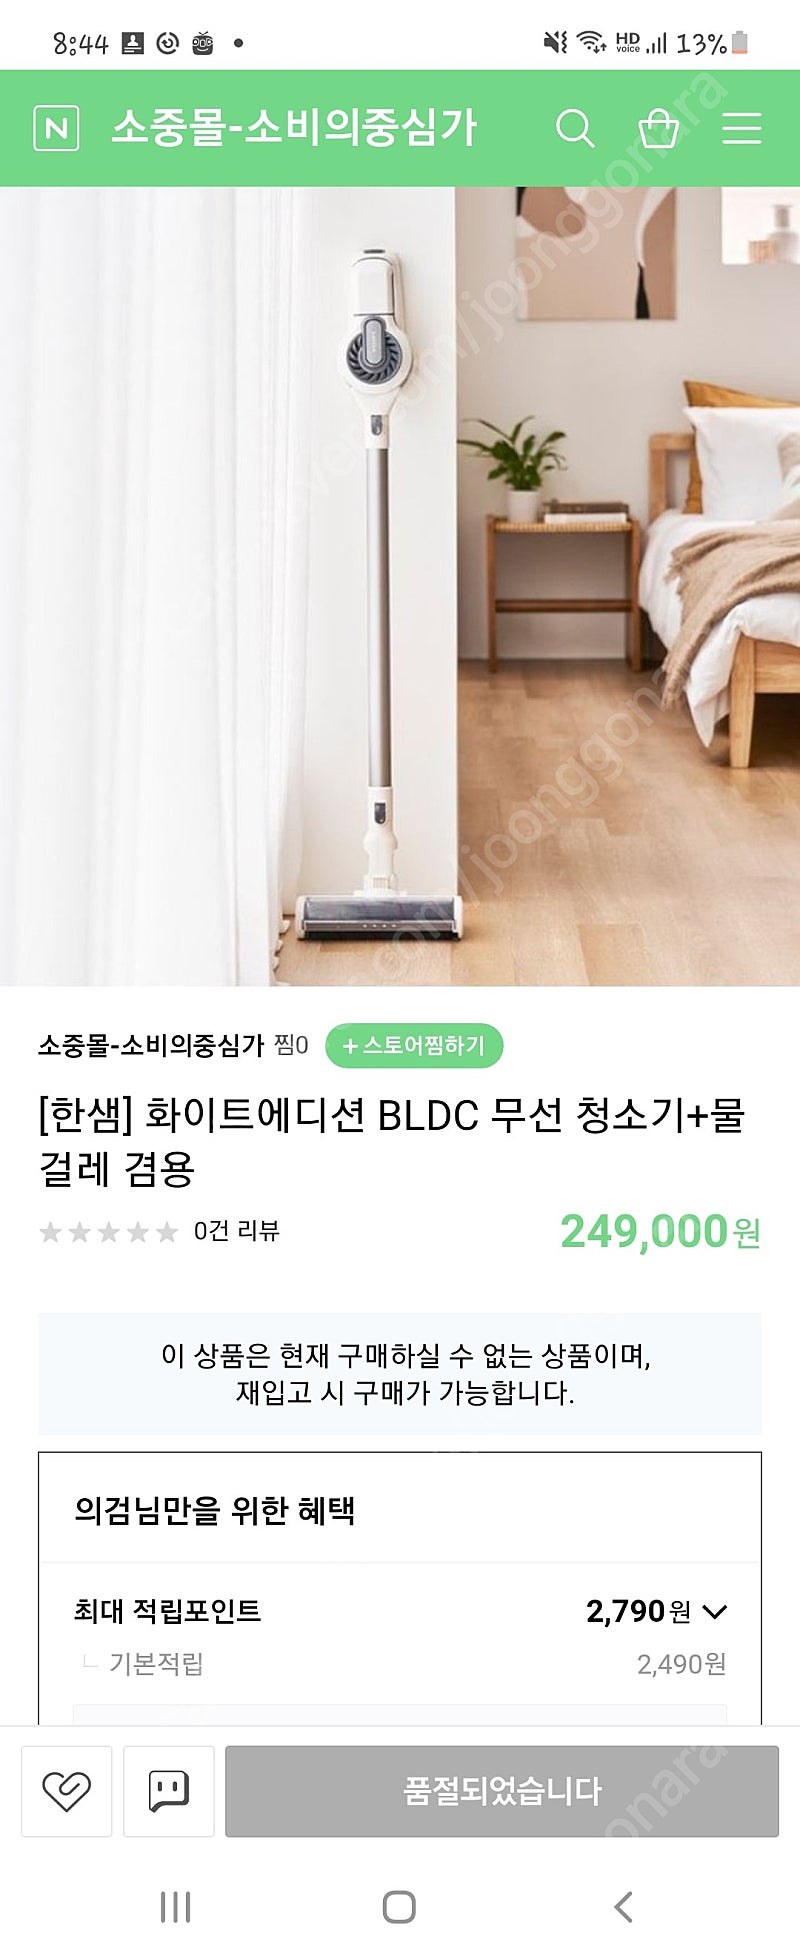 미개봉 한샘 BLDC 무선 청소기 판매합니다 !